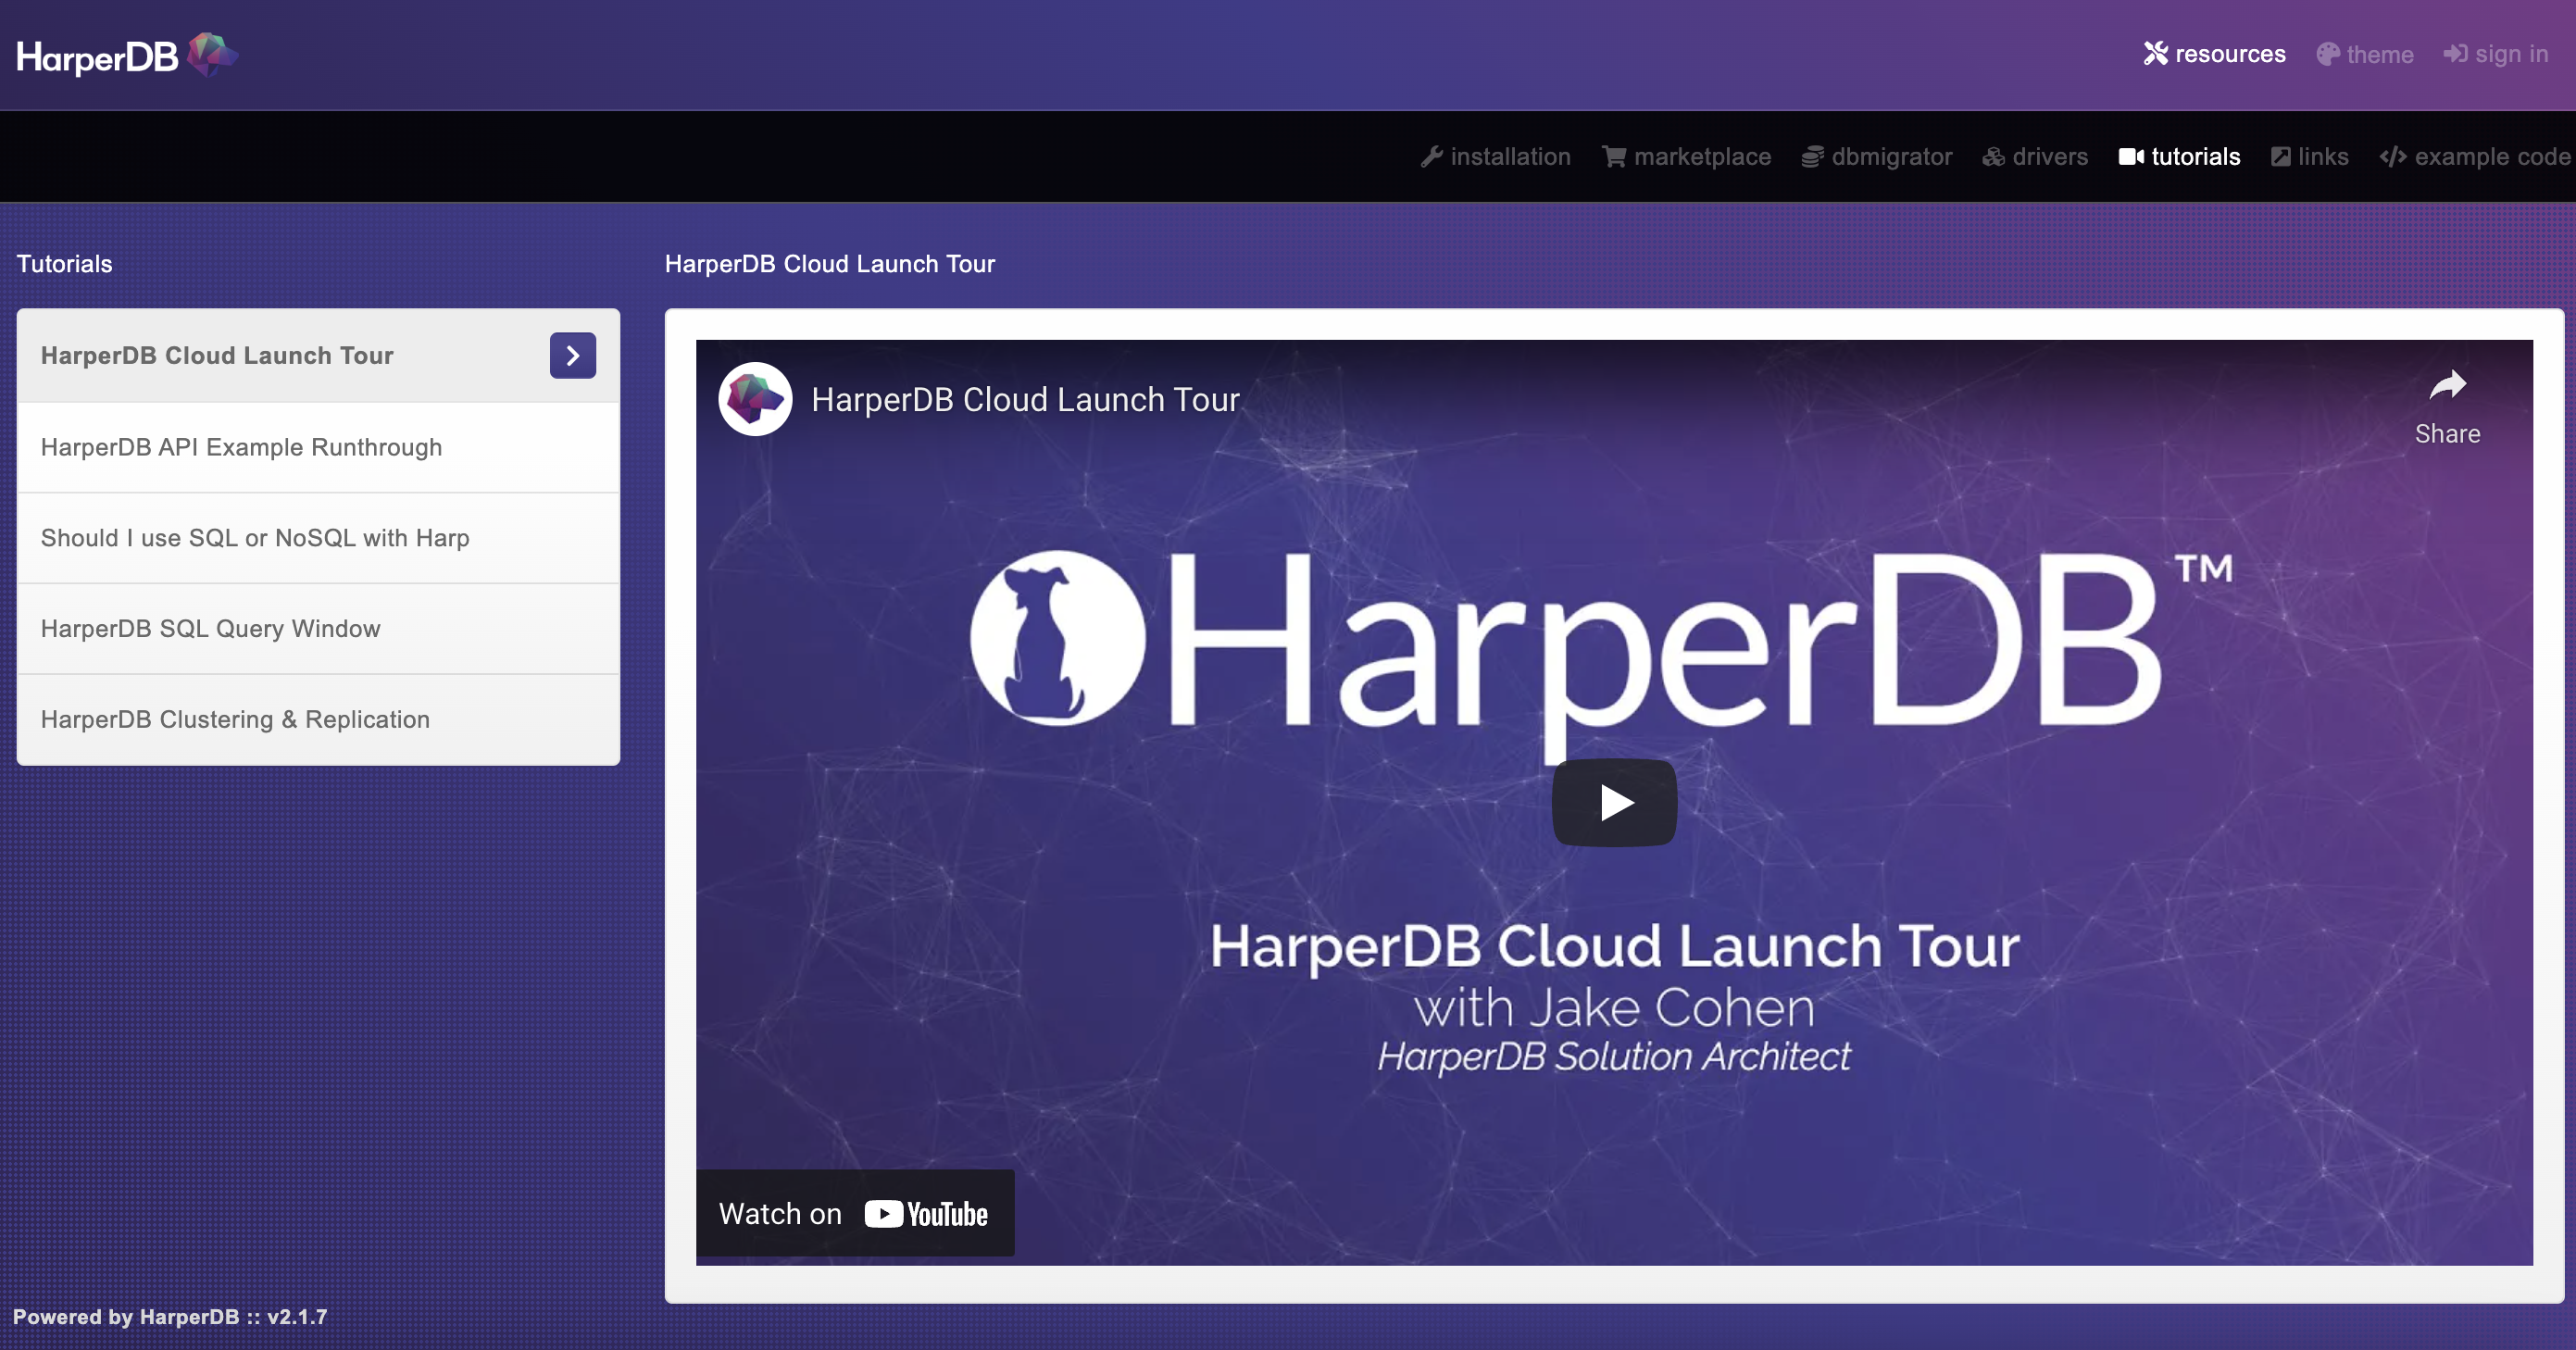 HarperDB-Cloud Launch Tour